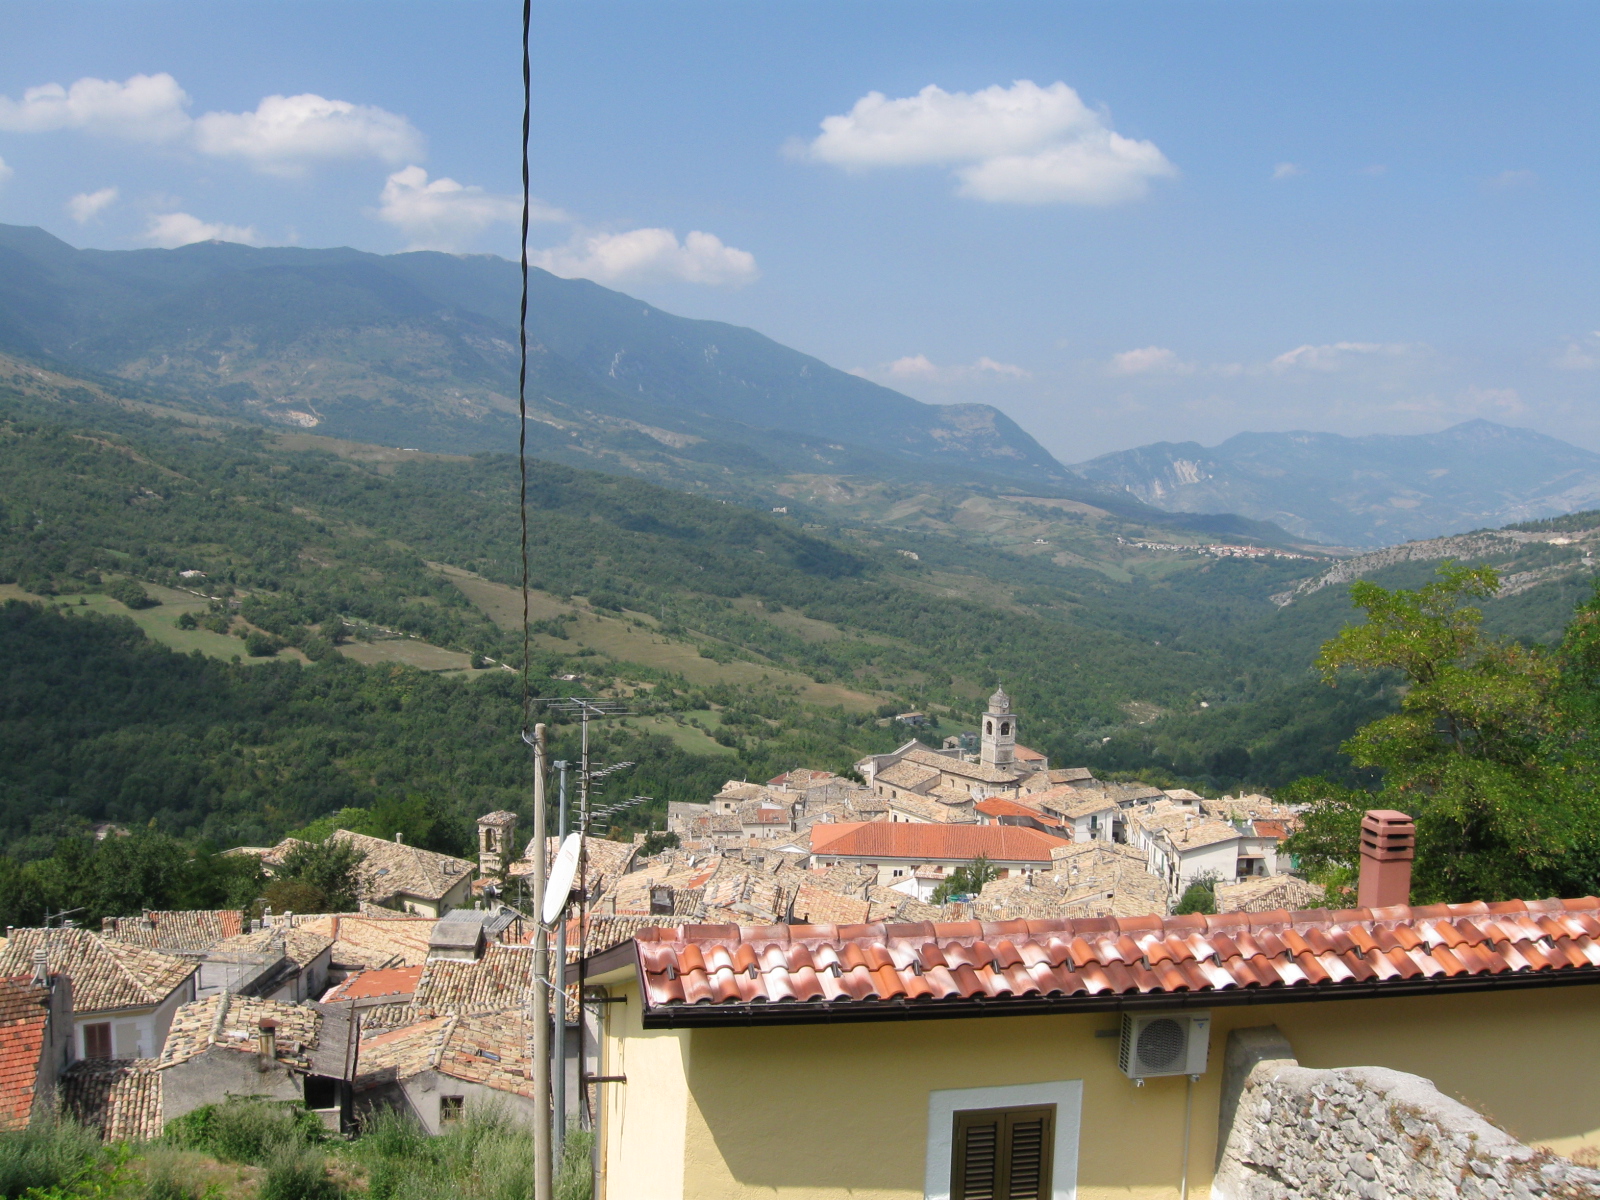 File:Caramanico Terme, Abruzzo - panoramio.jpg - Wikimedia Commons